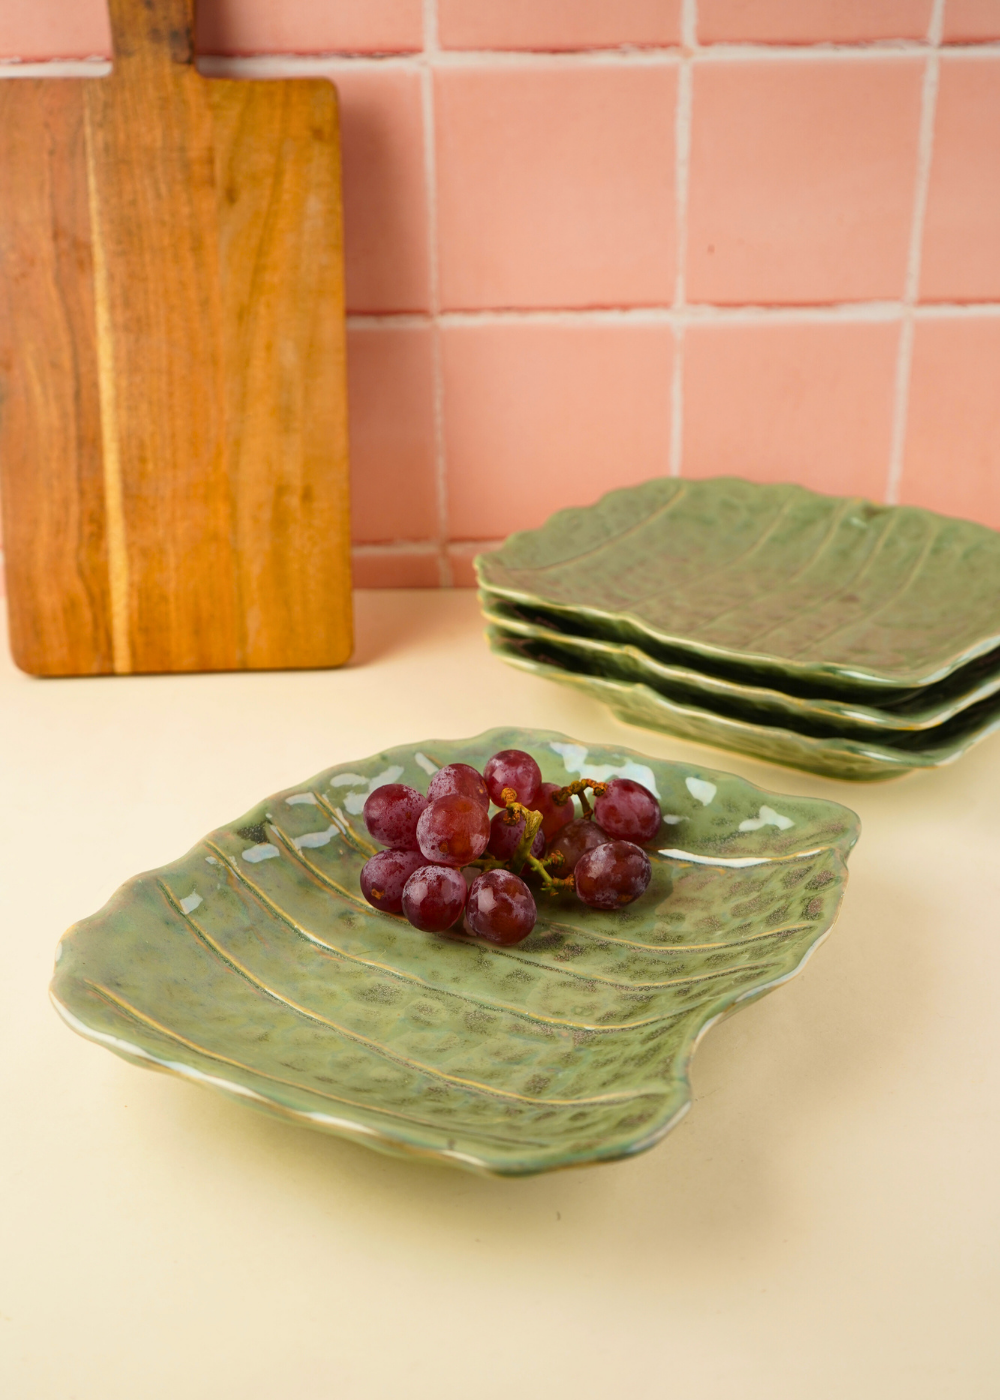 pistachio stoneware platter with ceramic material